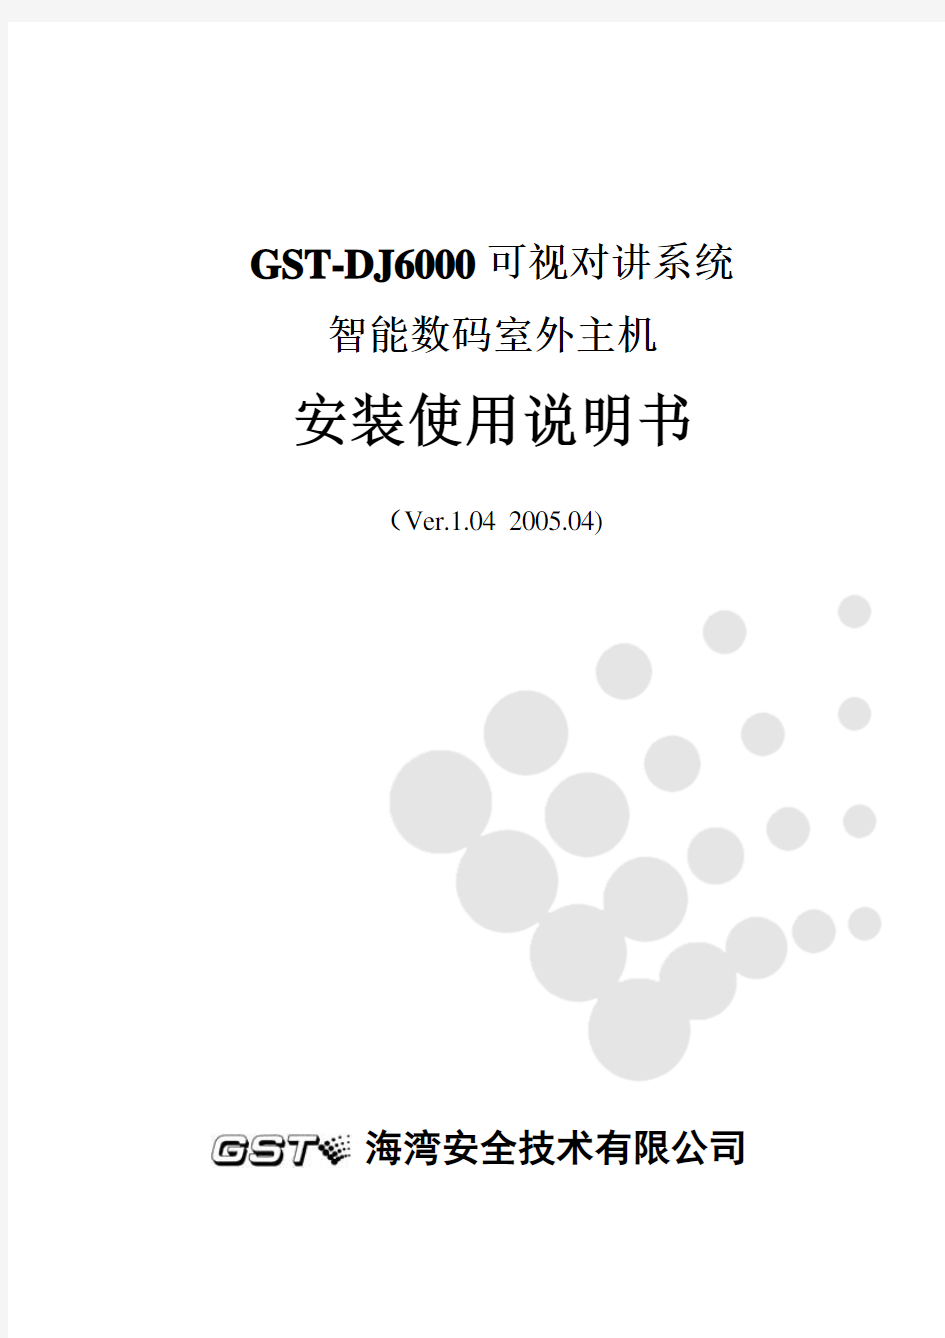 30301425 GST-DJ6000可视对讲系统智能数码室外主机安装使用说明书V1.04 B2.910.253-255 262-267 201-203 53